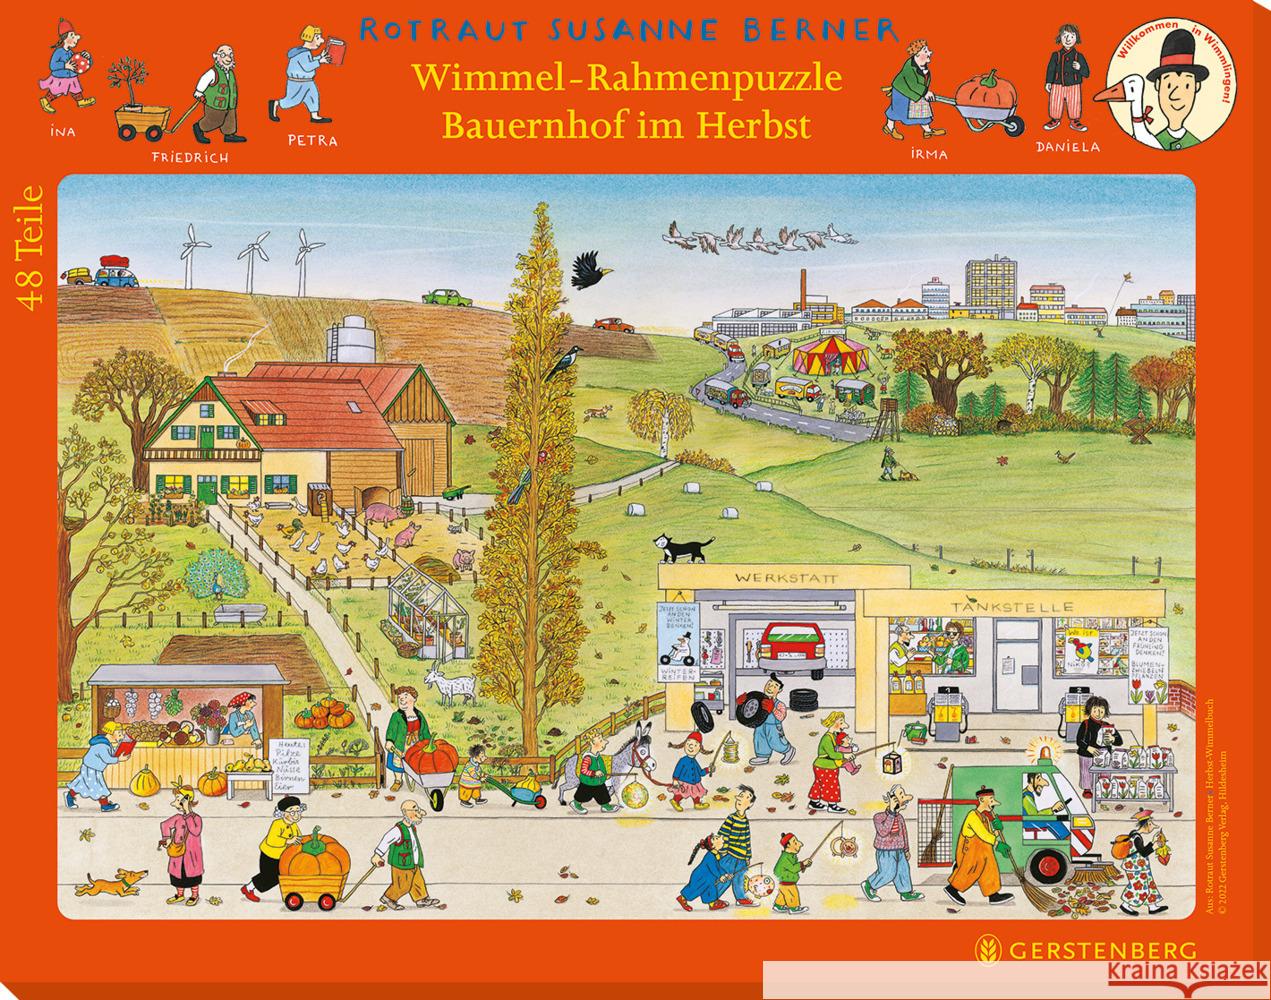 Wimmel-Rahmenpuzzle Herbst Motiv Bauernhof Berner, Rotraut Susanne 4250915935713